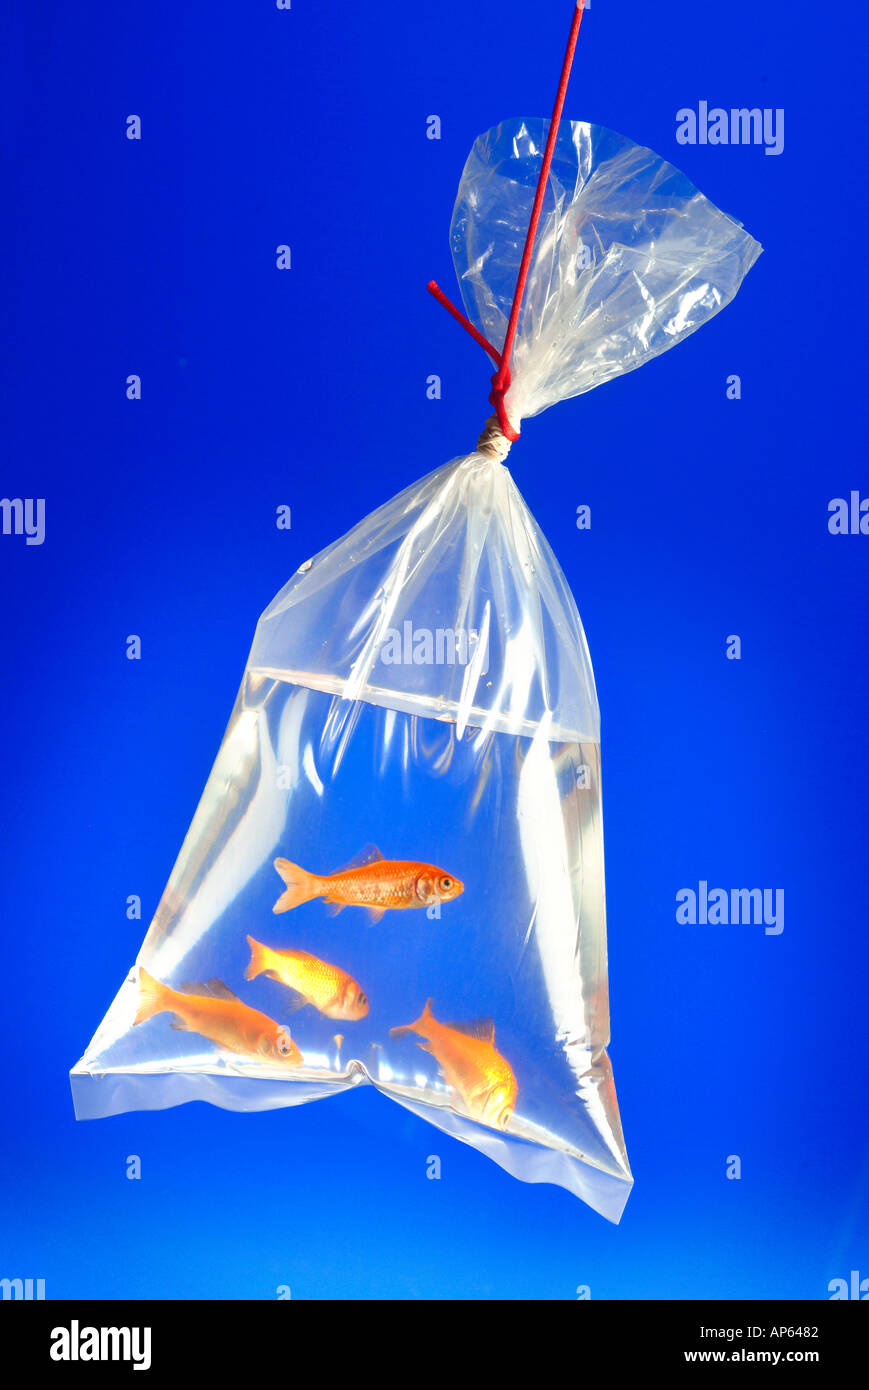 Goldfish nuotare in un sacchetto di plastica essendo dangled dalla stringa di colore rosso Foto Stock